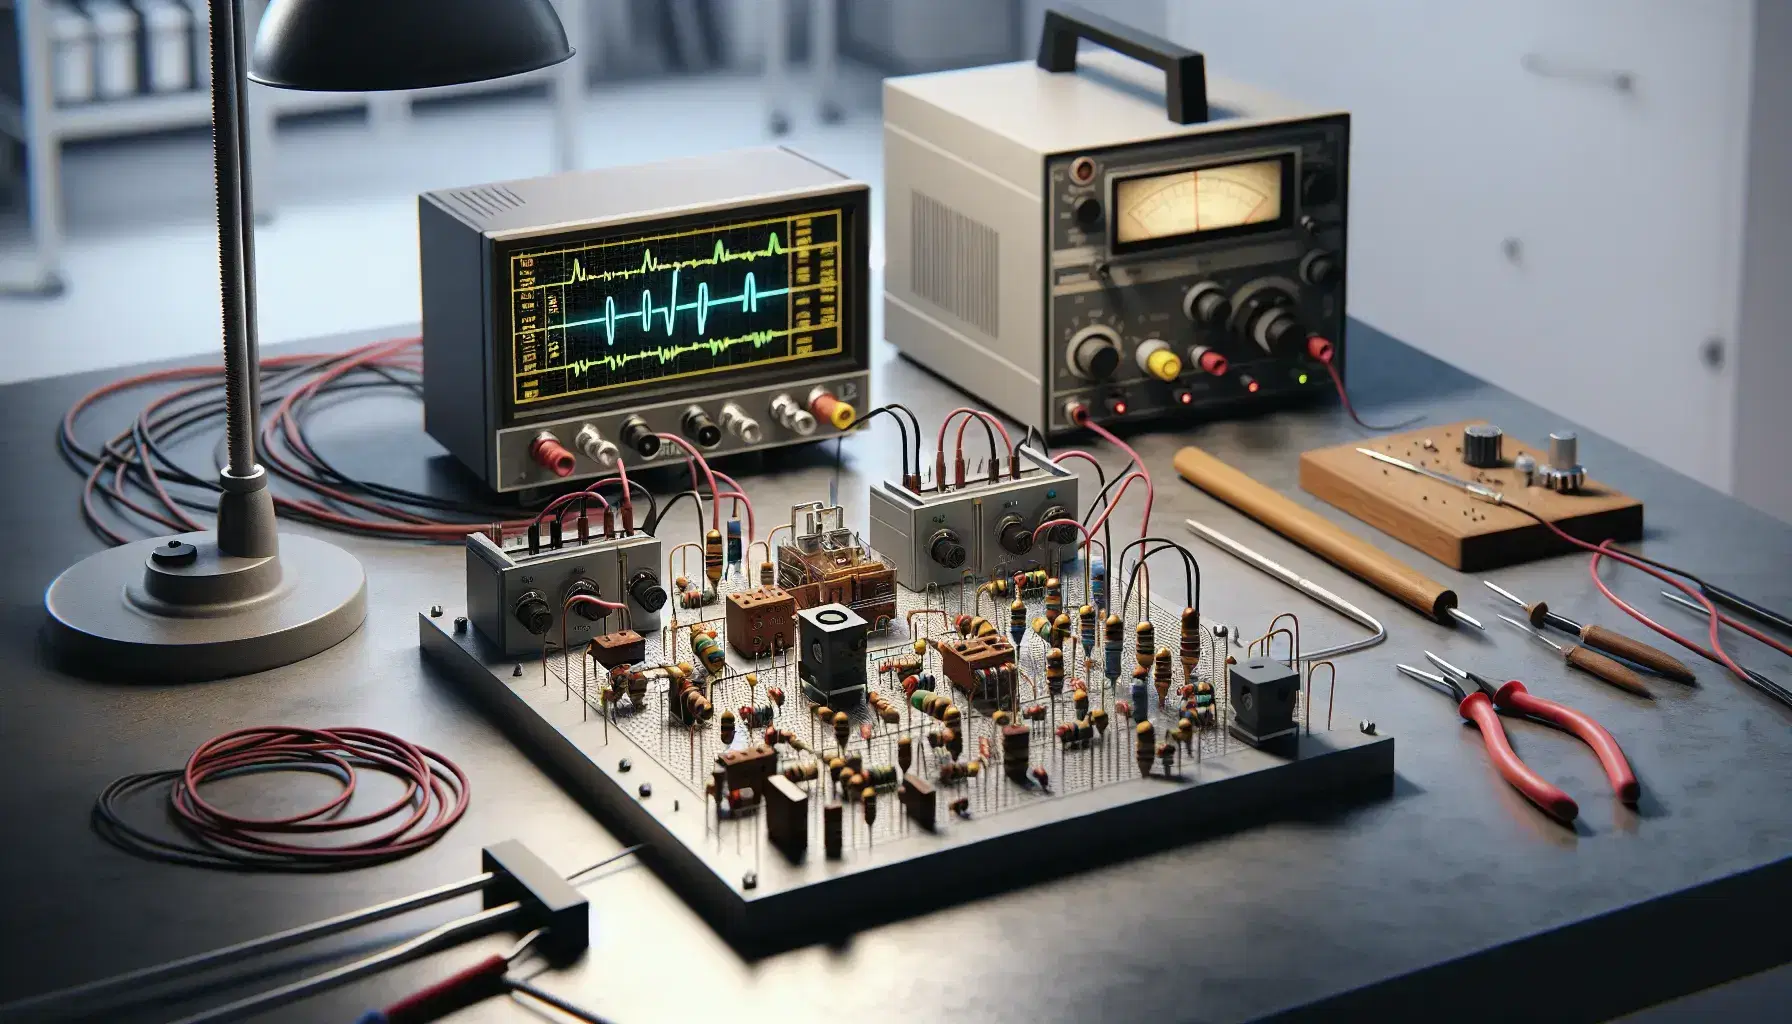 Laboratorio scientifico con banco di lavoro, generatore di tensione, circuito elettronico su base in legno, oscilloscopio e multimeter digitale.